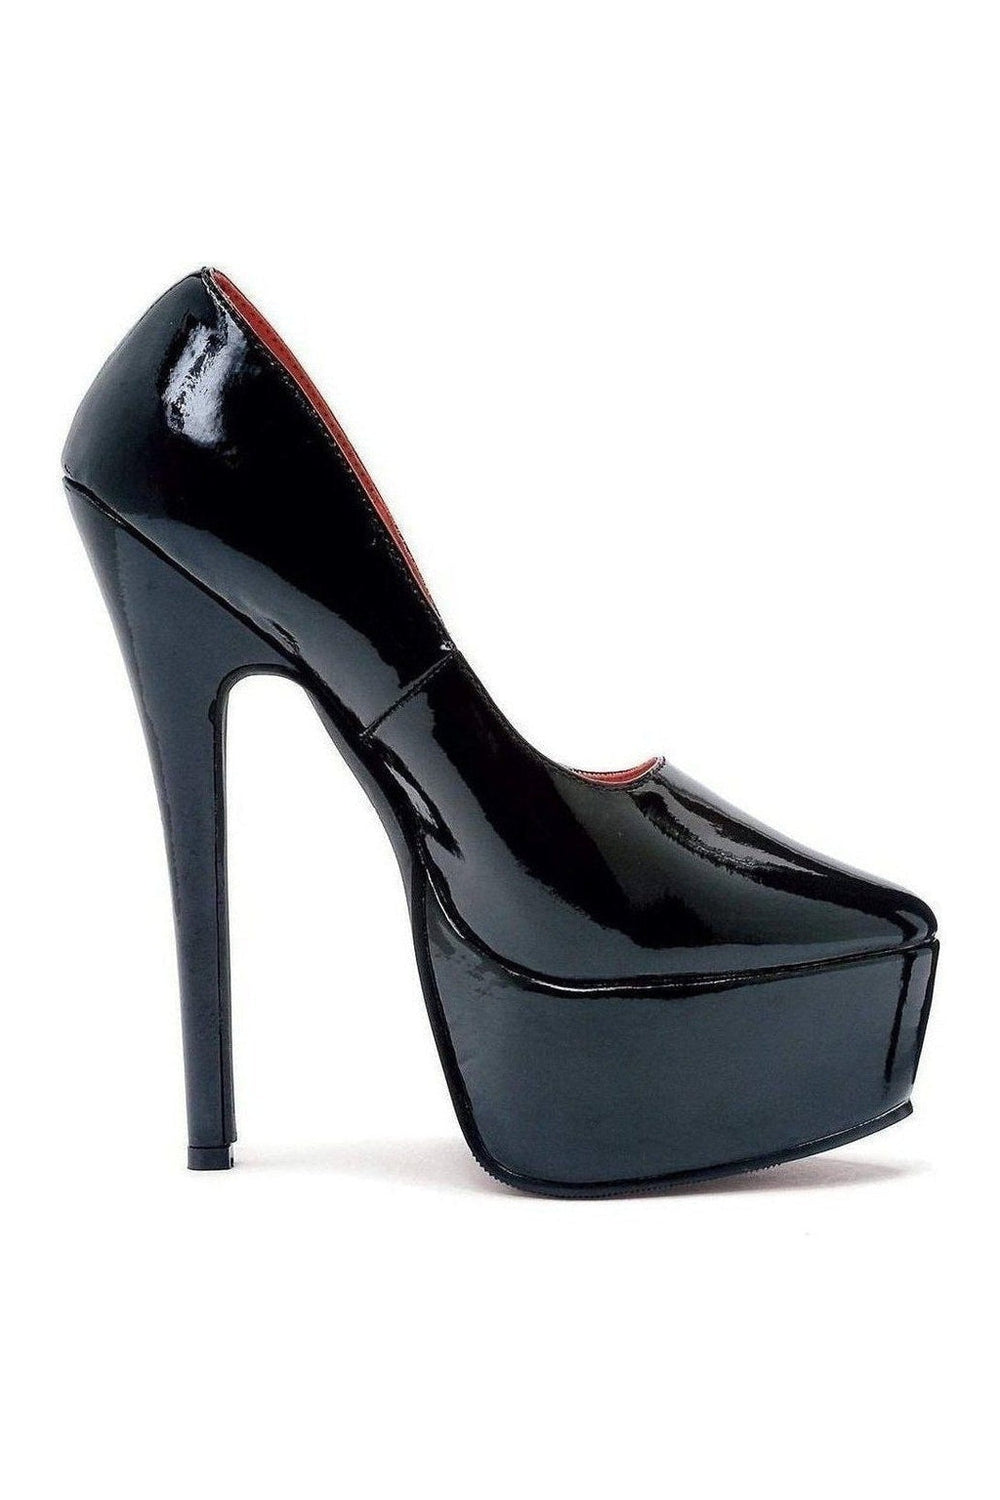 652-PRINCE Platform Pump | Black Patent-Ellie Shoes-SEXYSHOES.COM